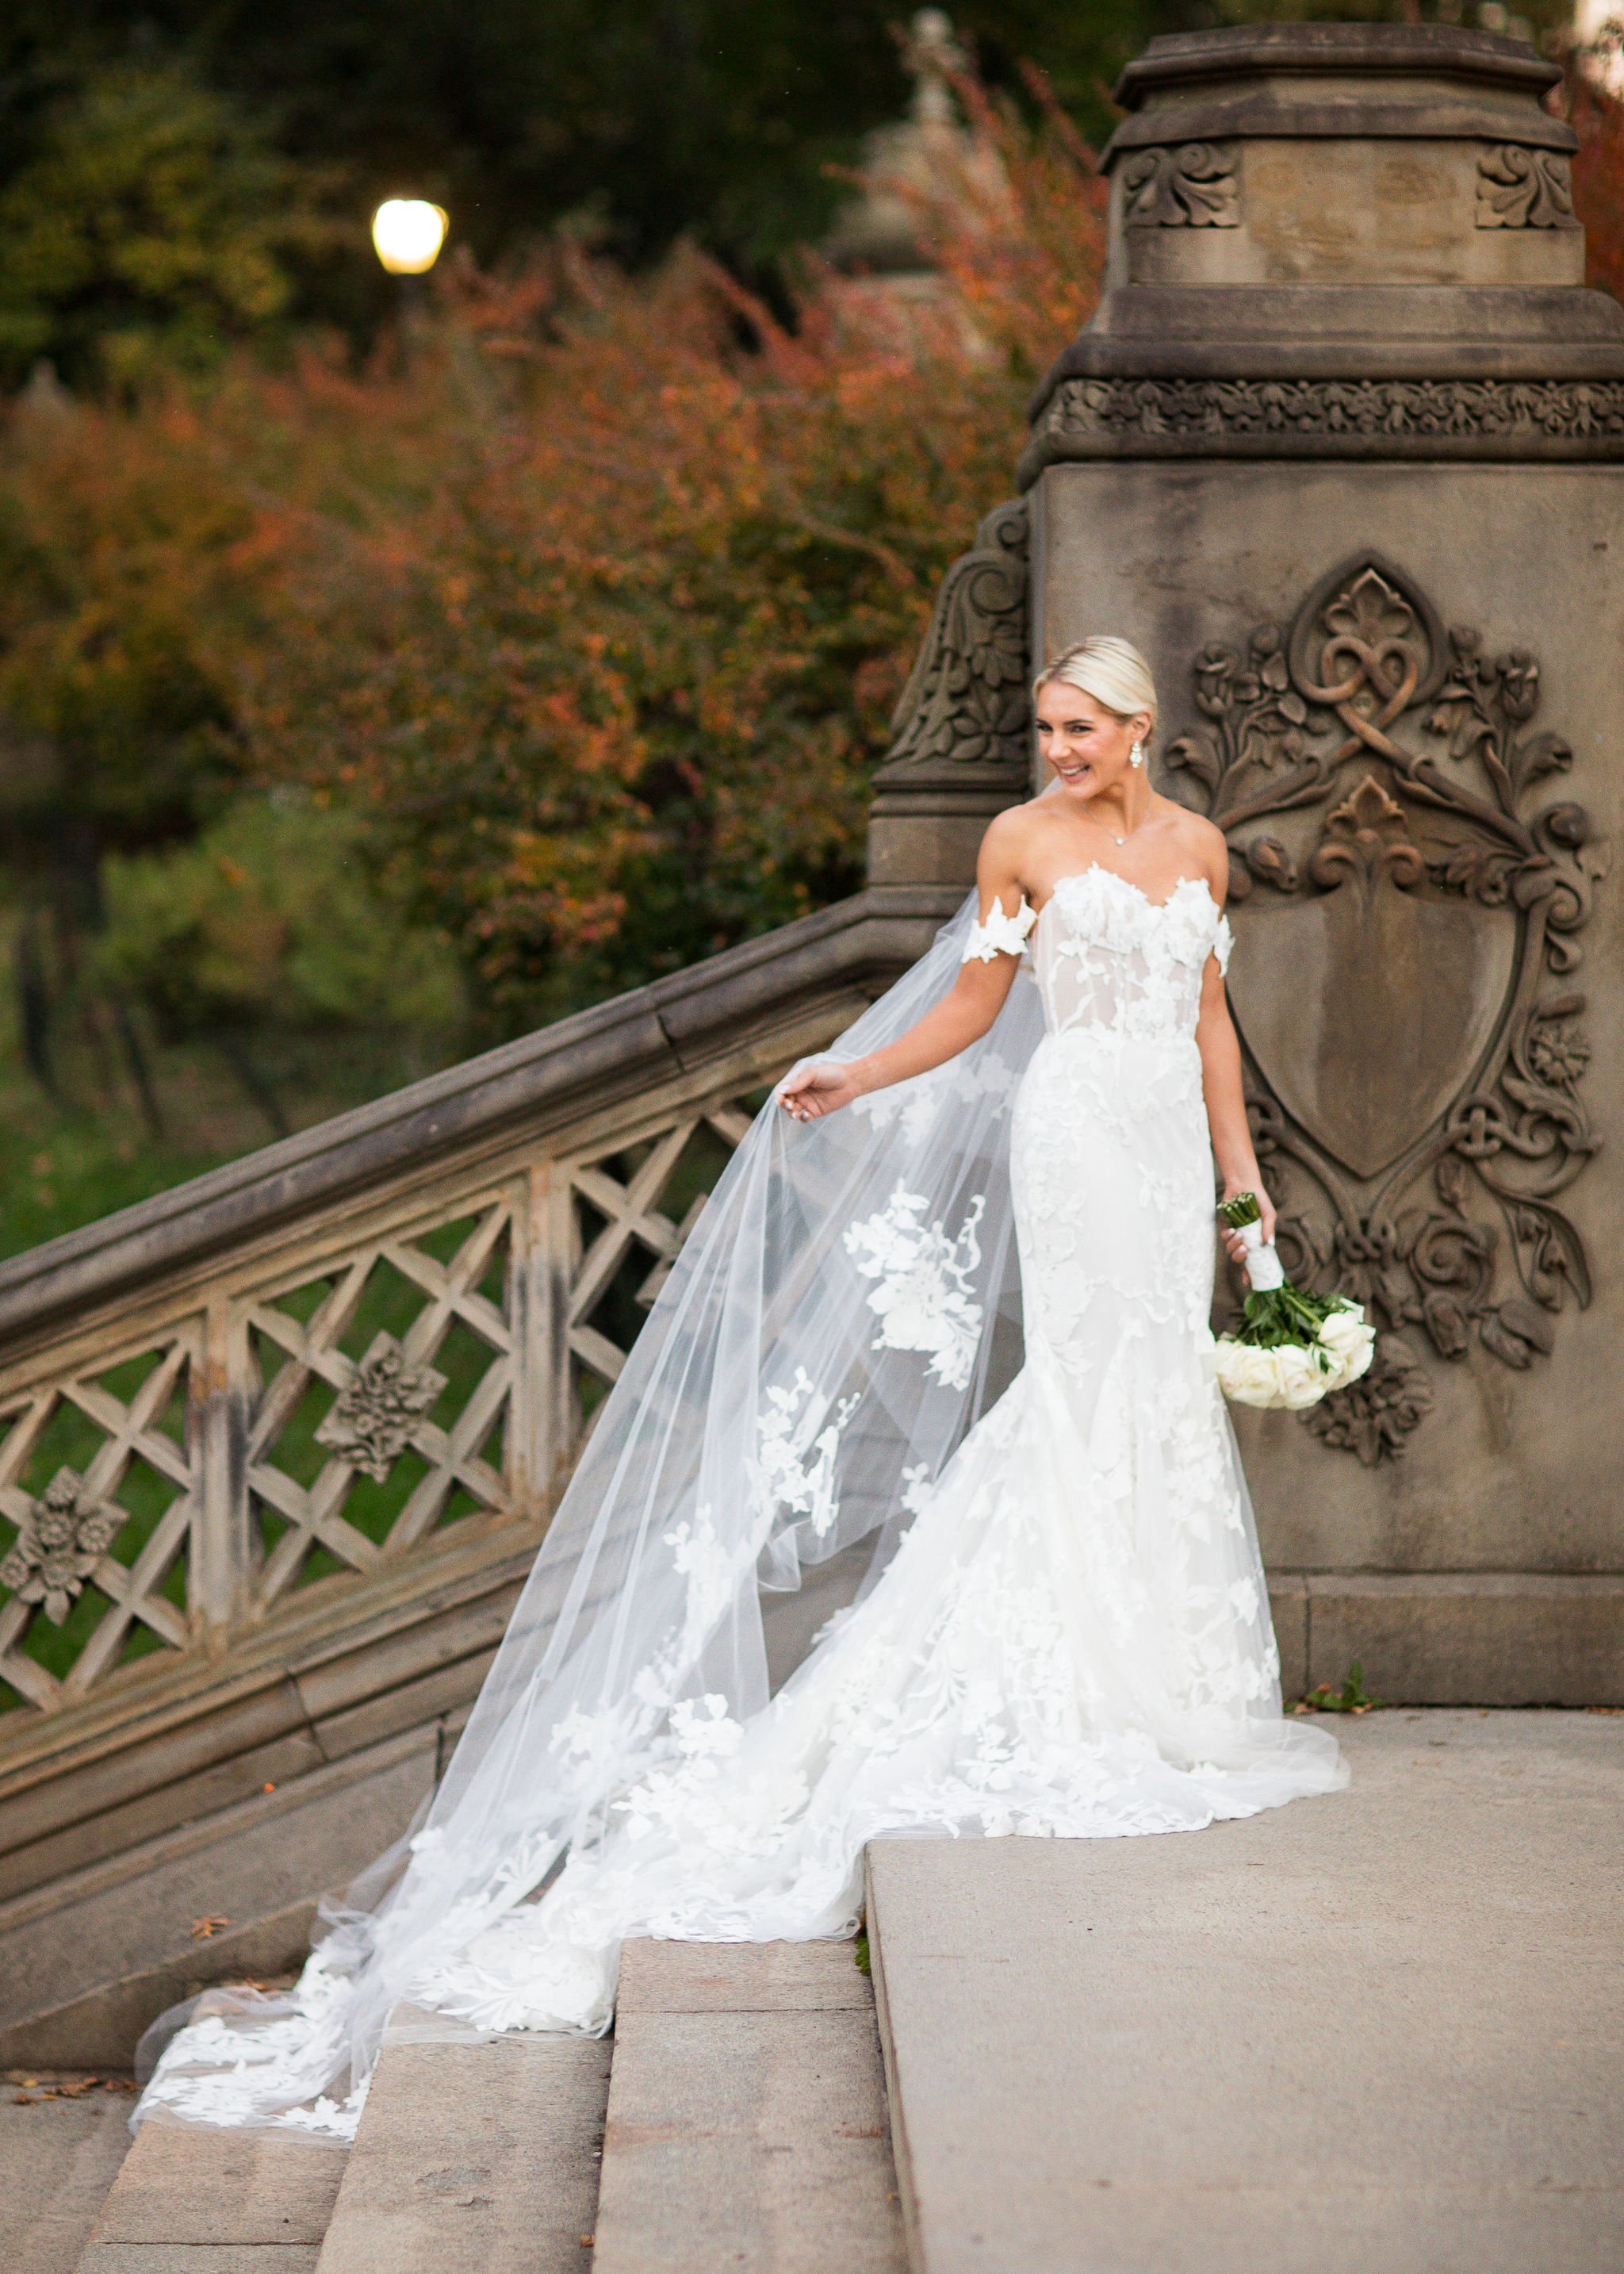  monique lhuillier dramatic veil central park wedding off the shoulder gown  